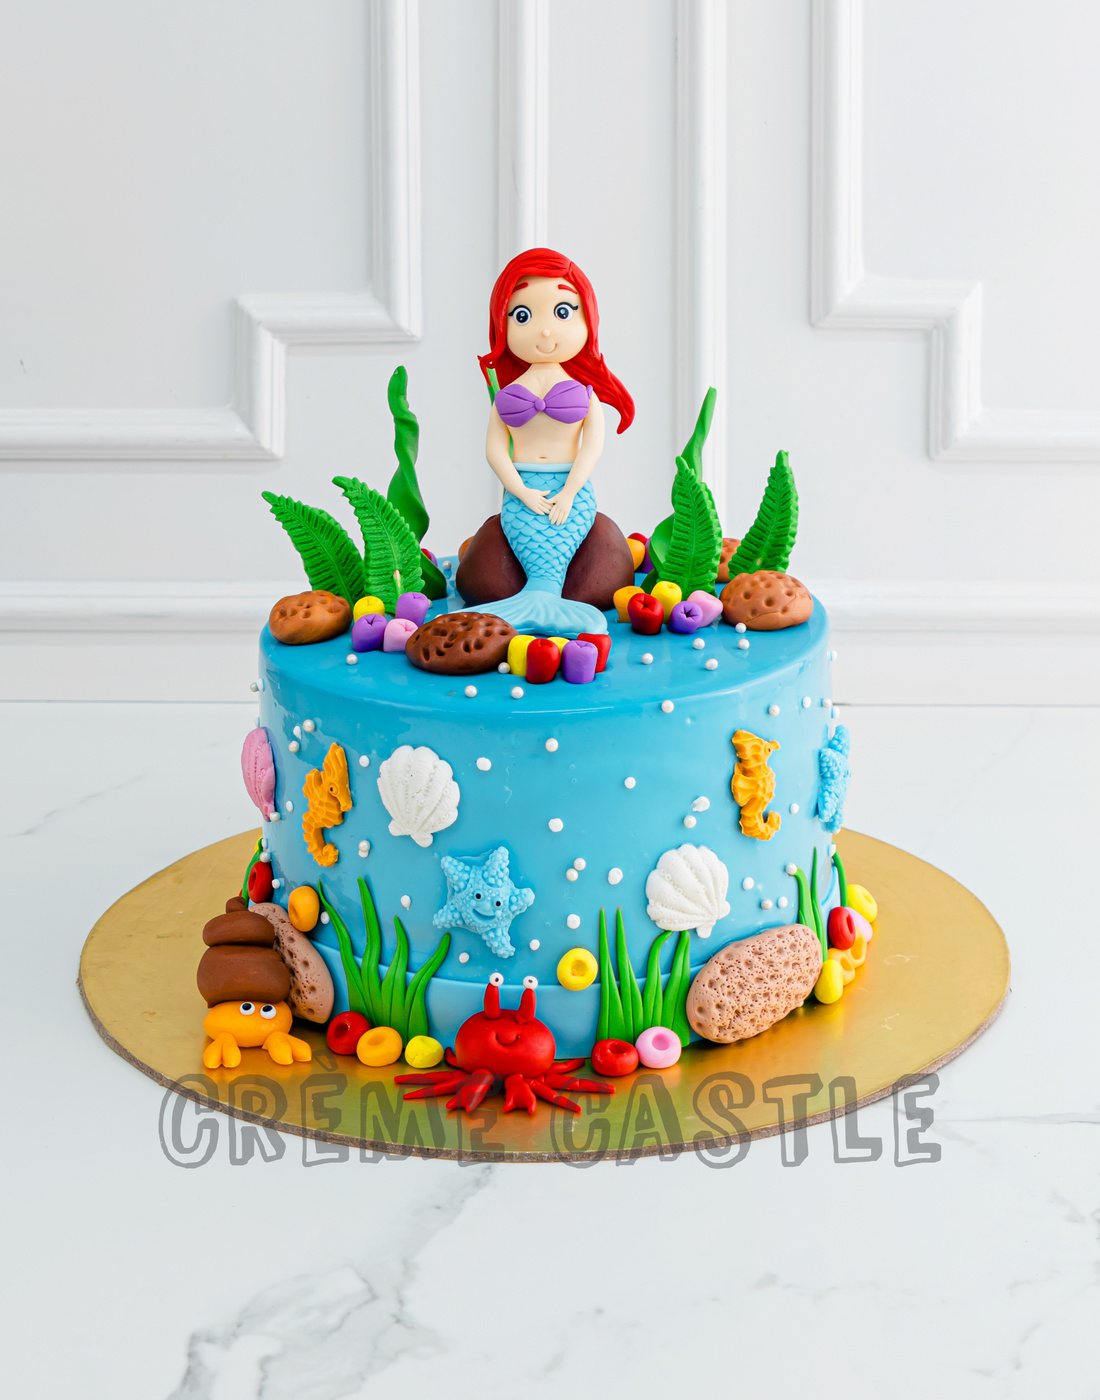 Share more than 69 mermaid shaped cake